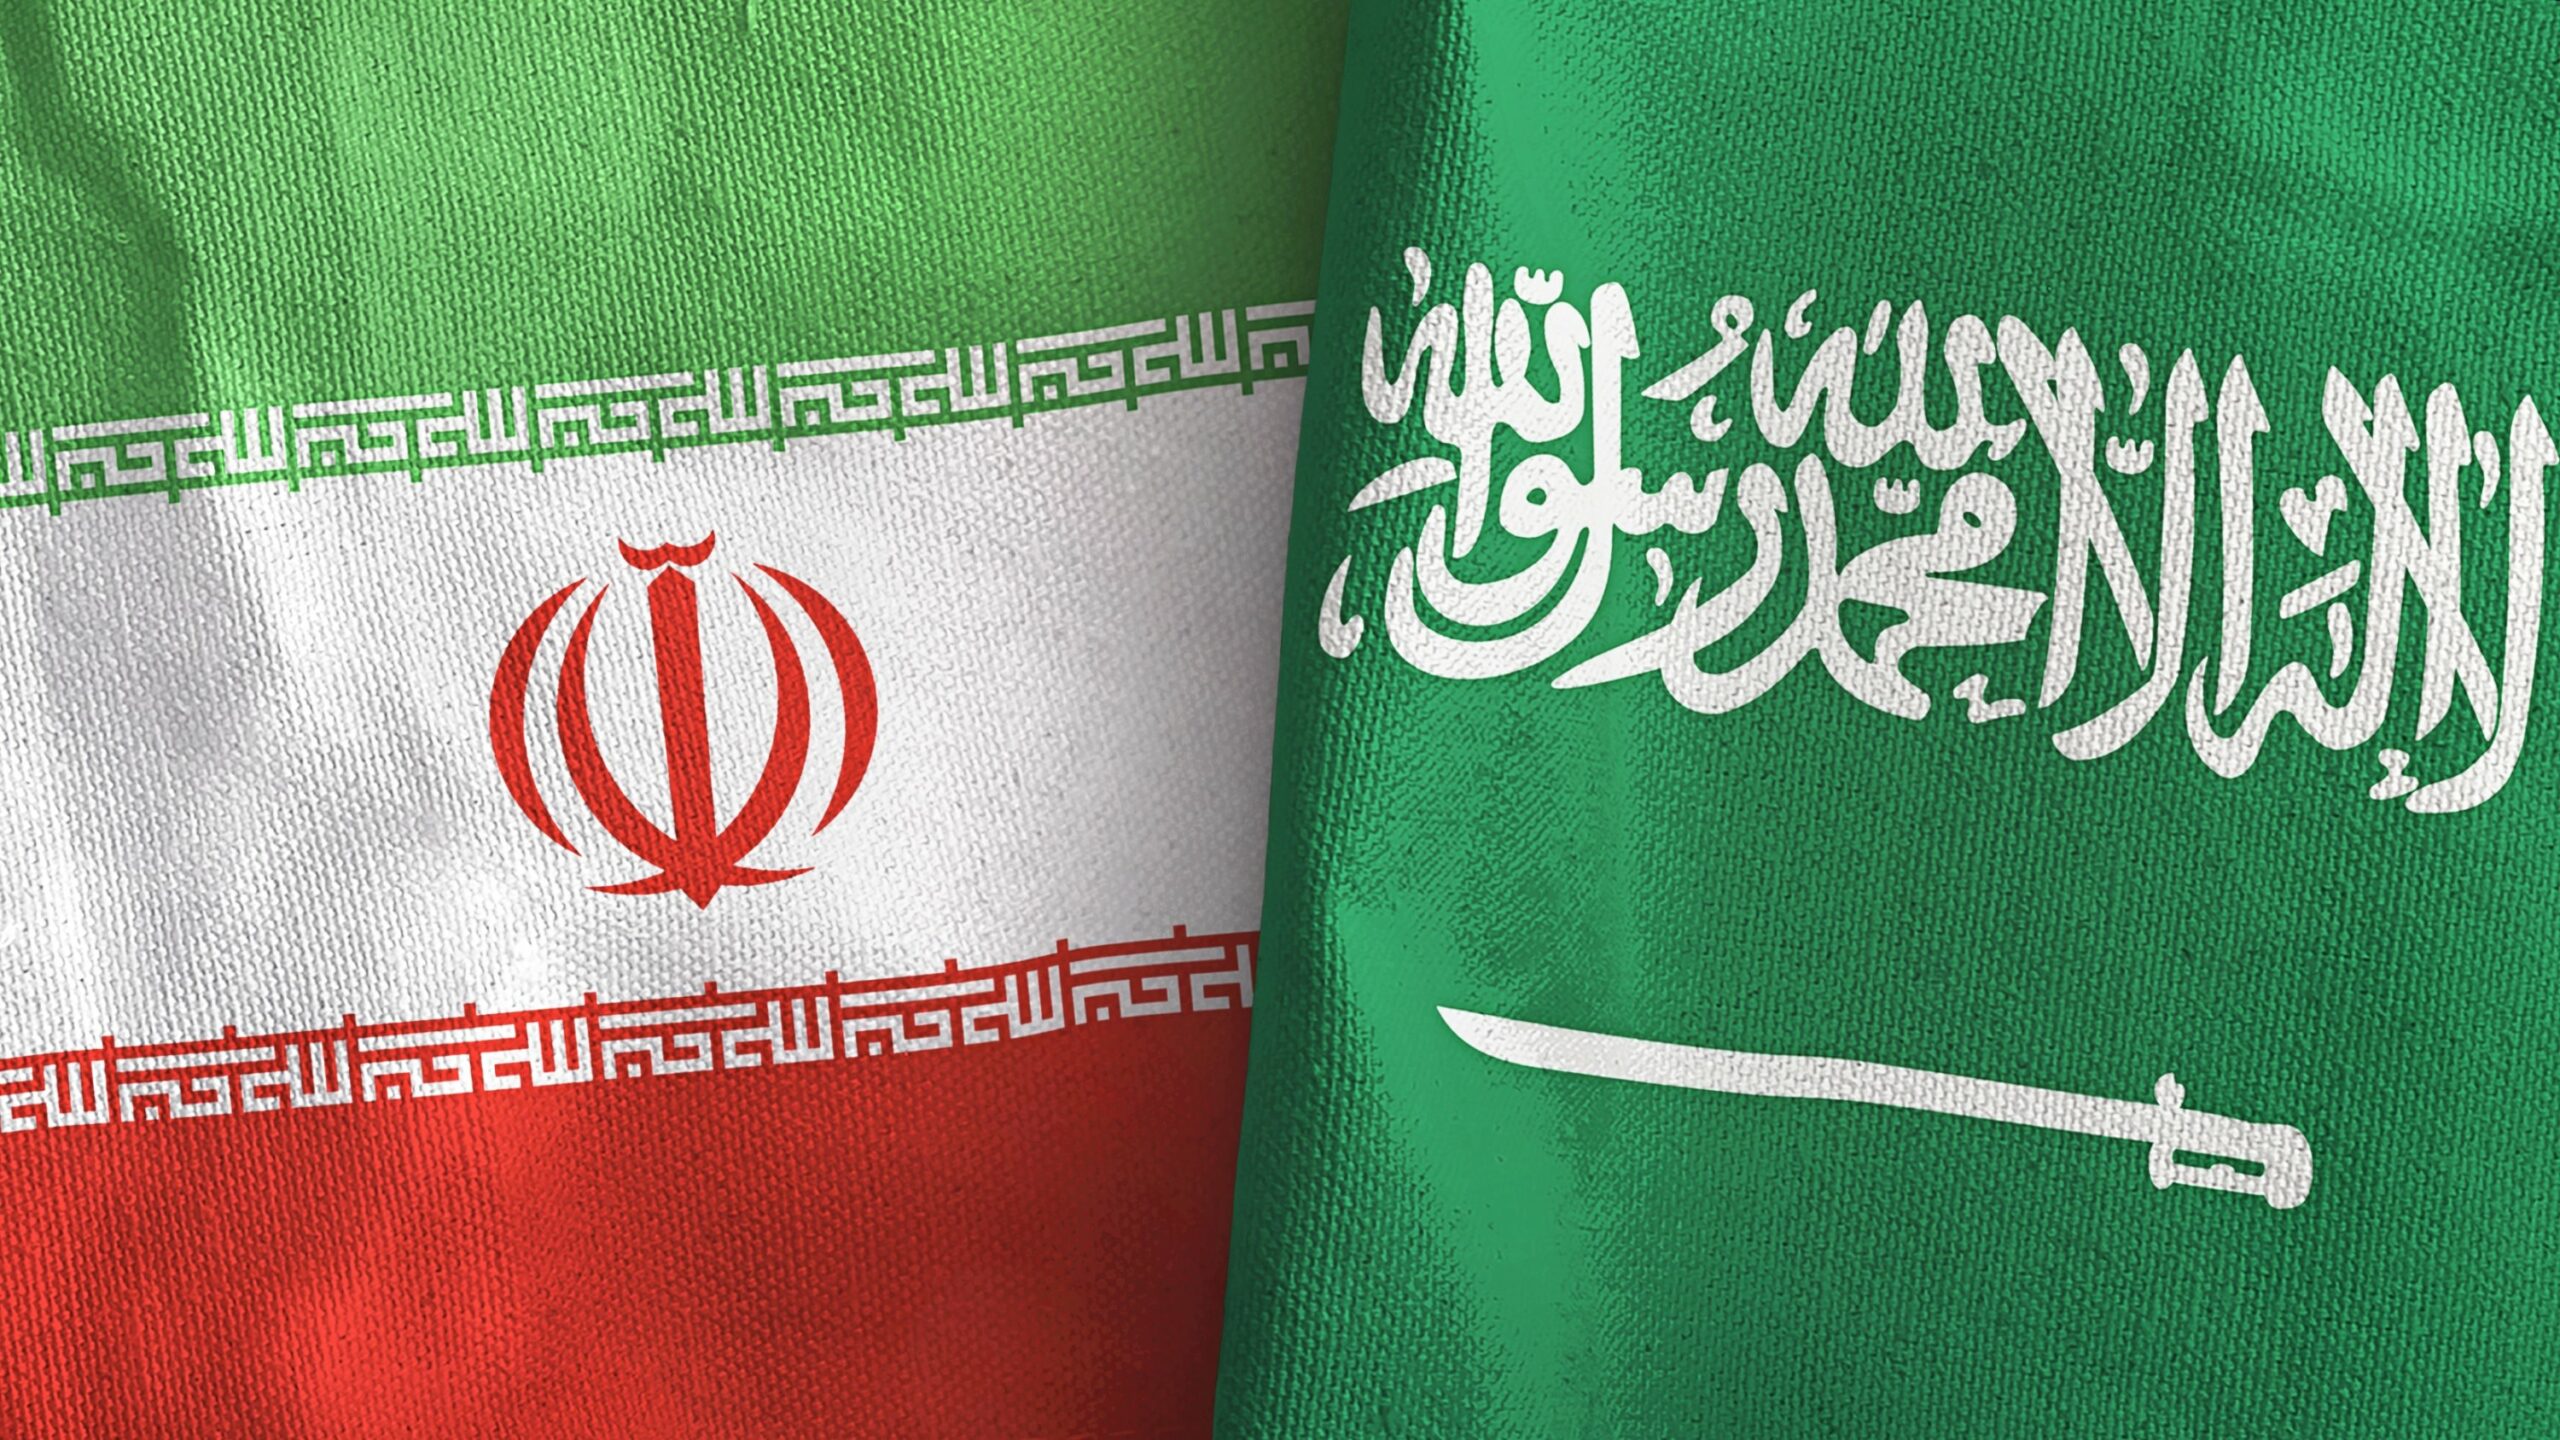 Ιράν και Σαουδική Αραβία ανακοίνωσαν ότι προχωρούν στην αποκατάσταση των διπλωματικών σχέσεών τους